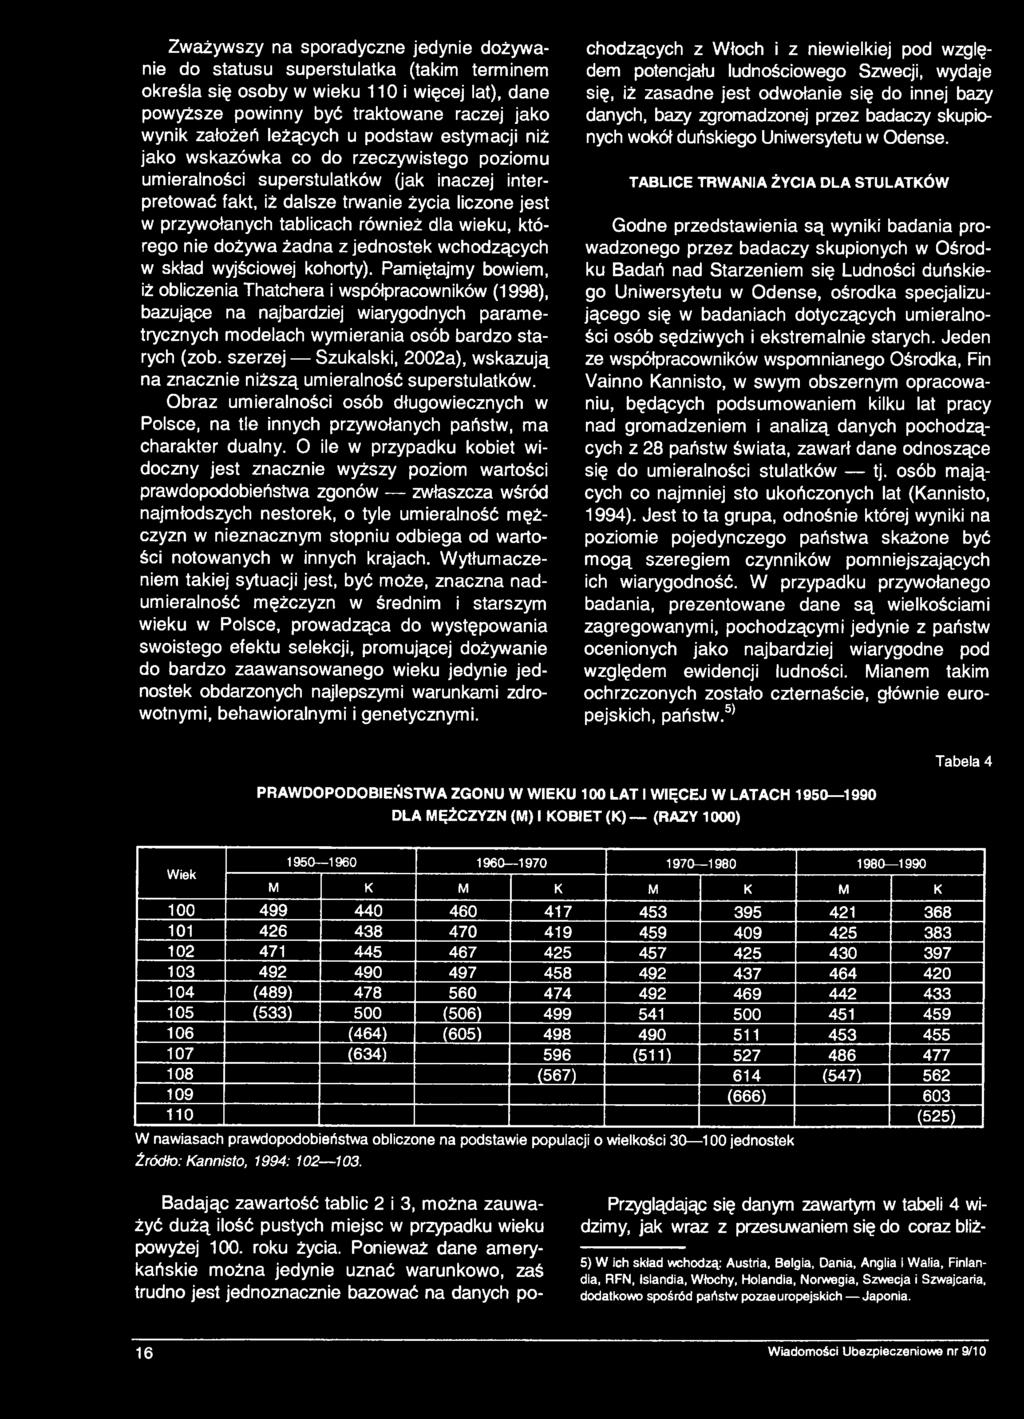 szerzej Szukalski, 2002a), wskazują na znacznie niższą umieralność superstulatków. Obraz umieralności osób długowiecznych w Polsce, na tle innych przywołanych państw, ma charakter dualny.